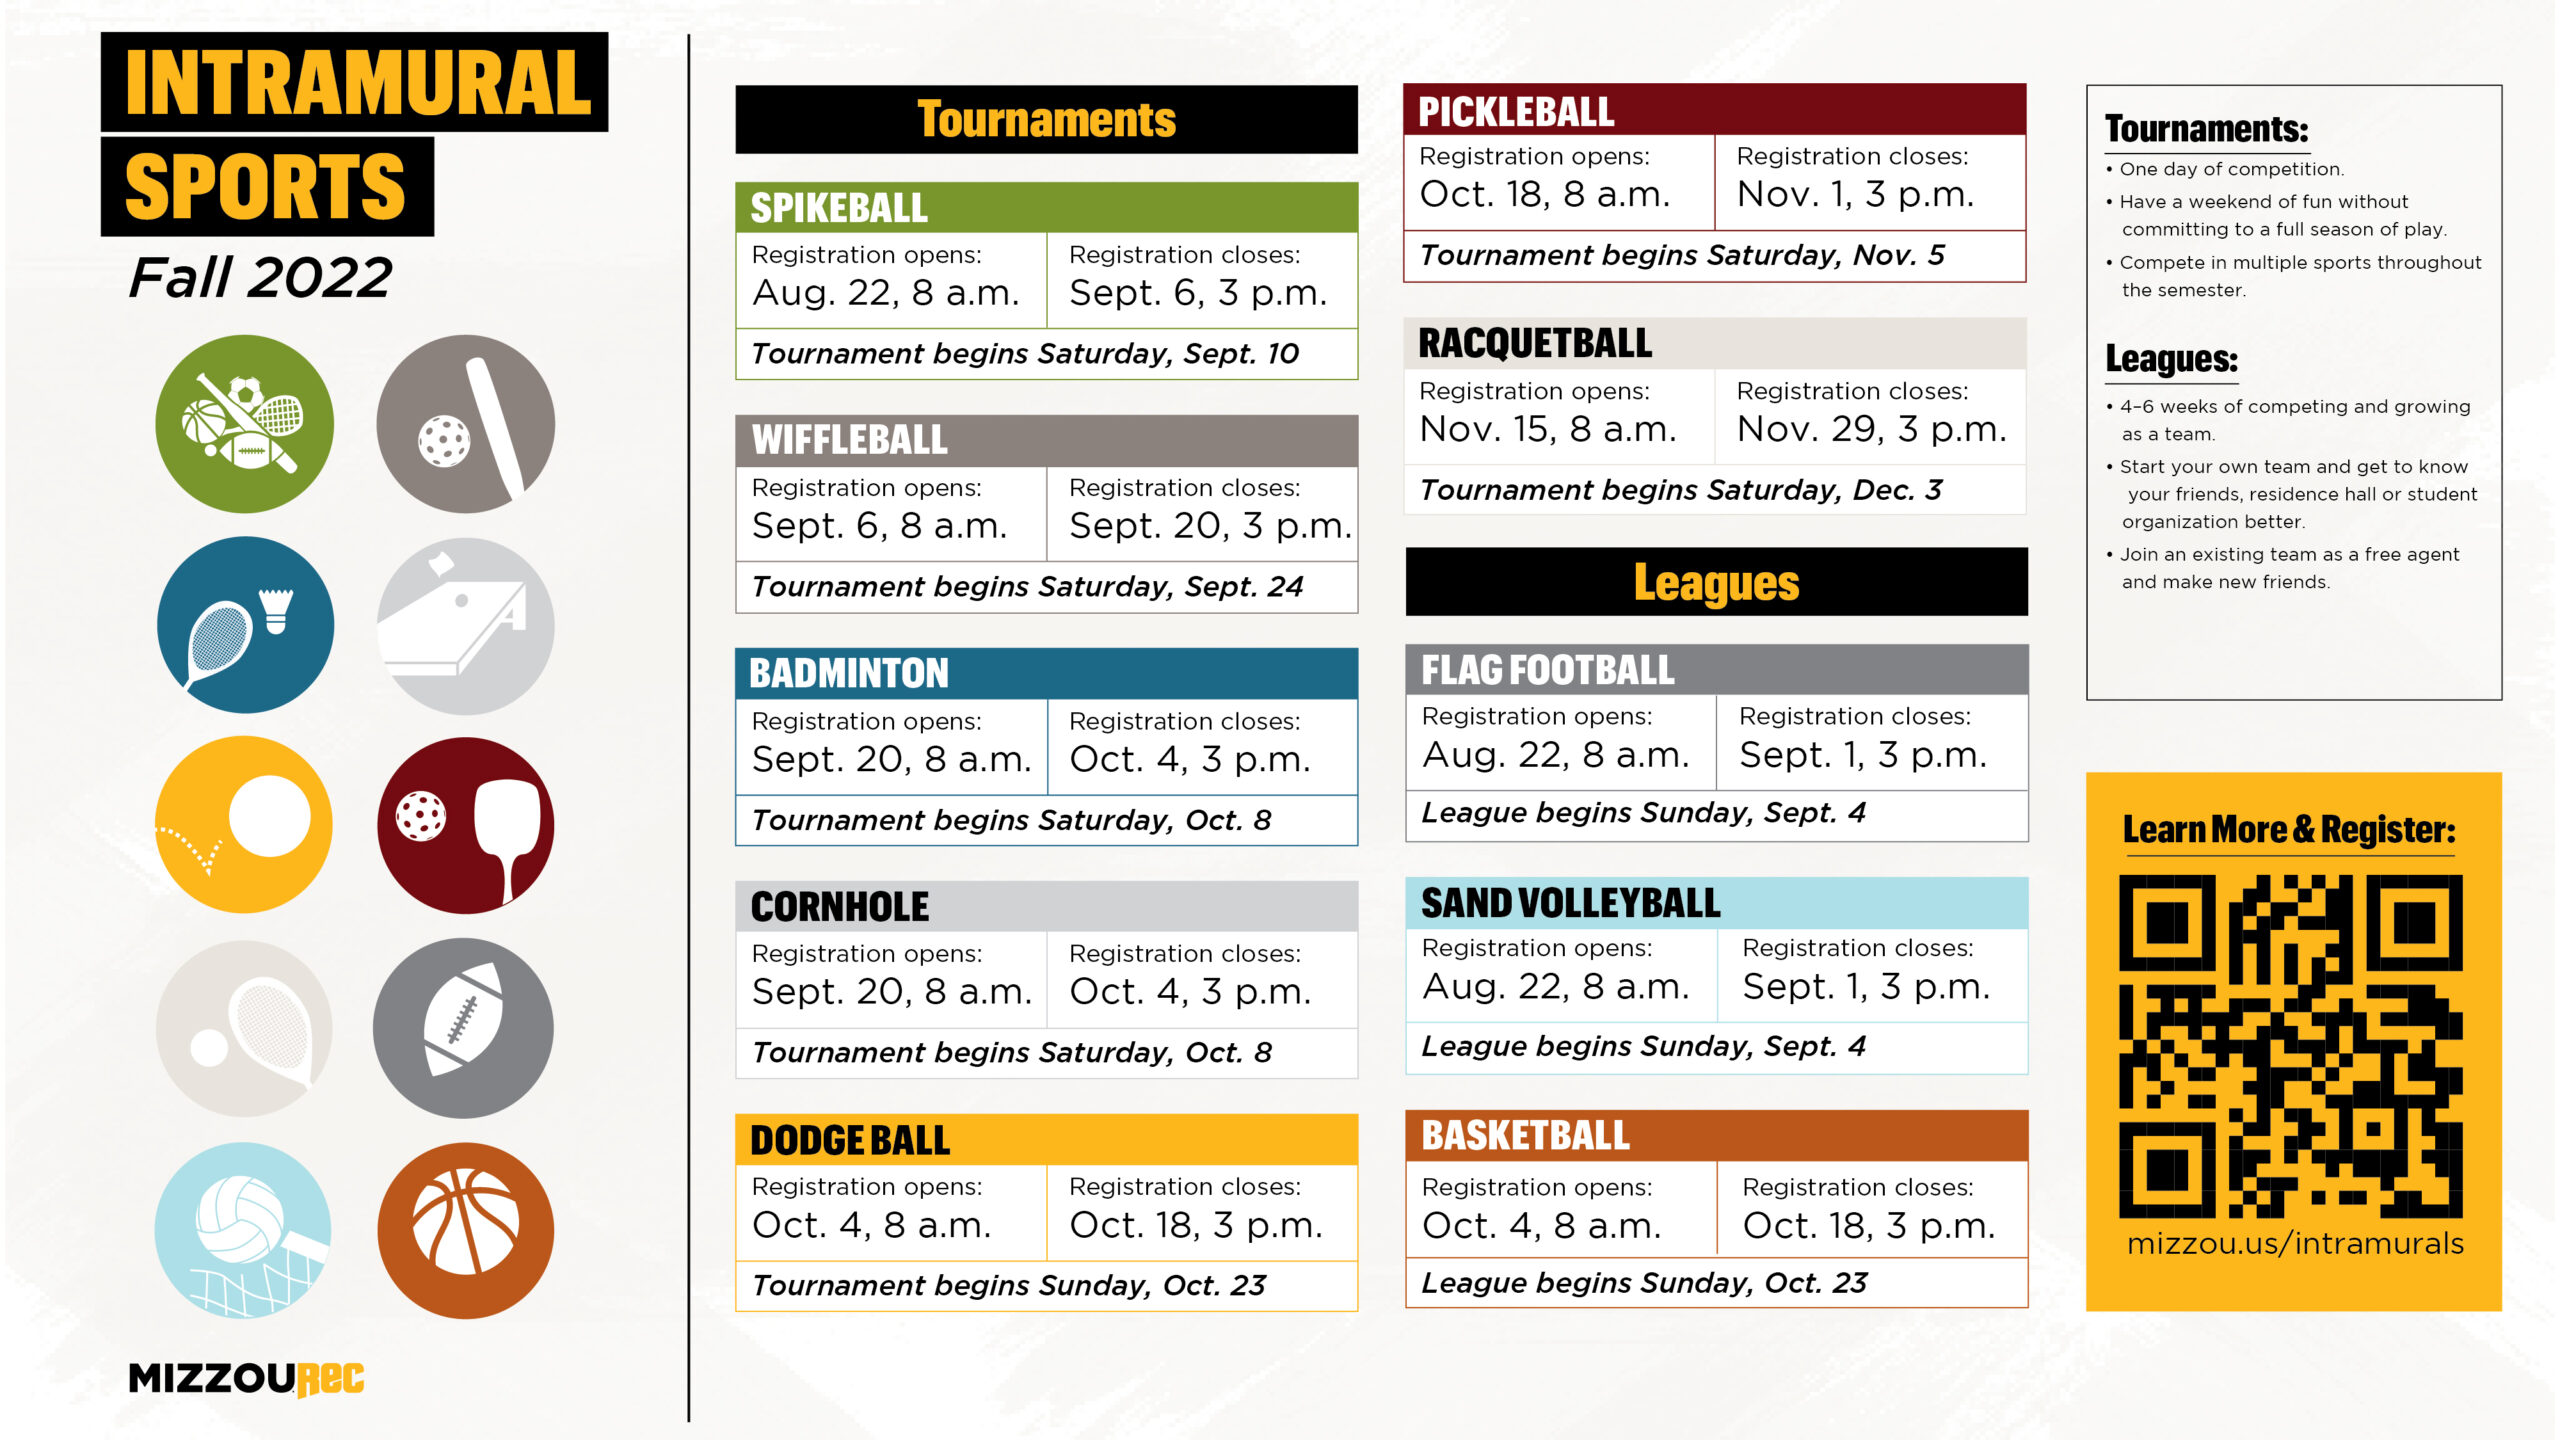 Intramural sports fall '22 schedule